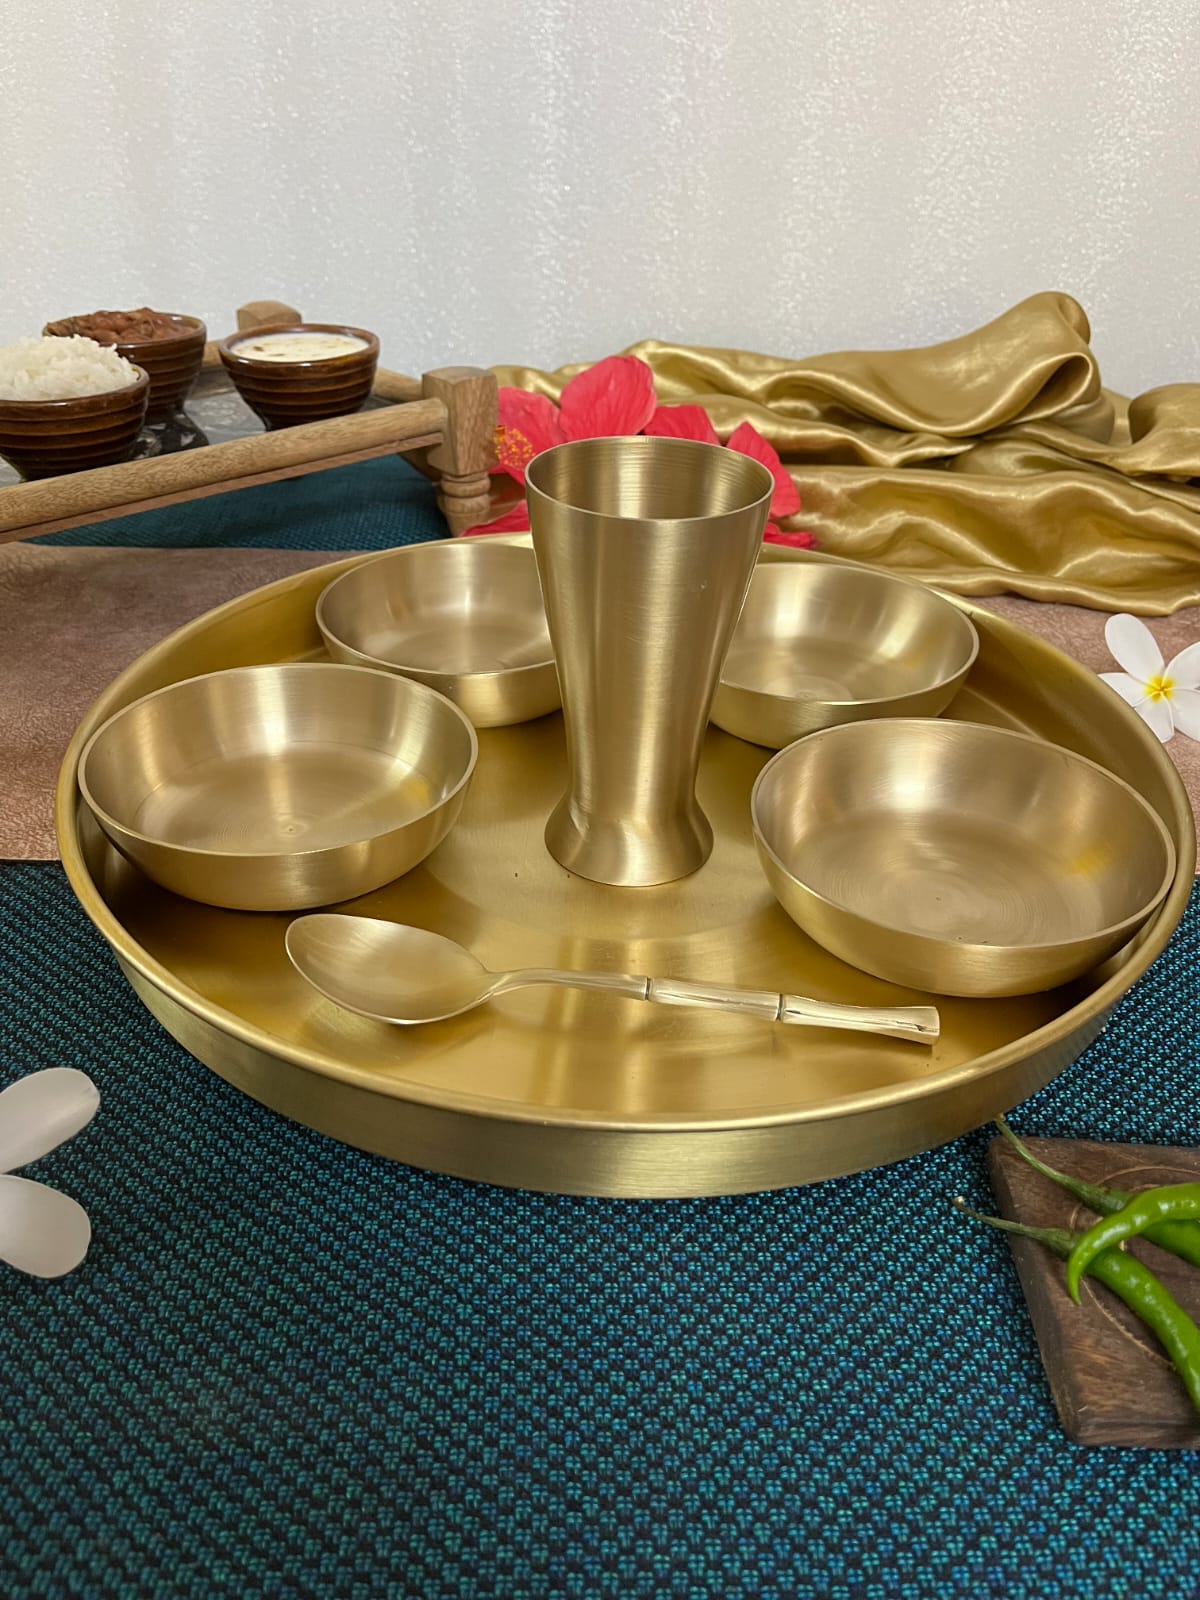 GOLDGIFTIDEAS Brass Nakshi Baby Dinner Set for Home & Kitchen